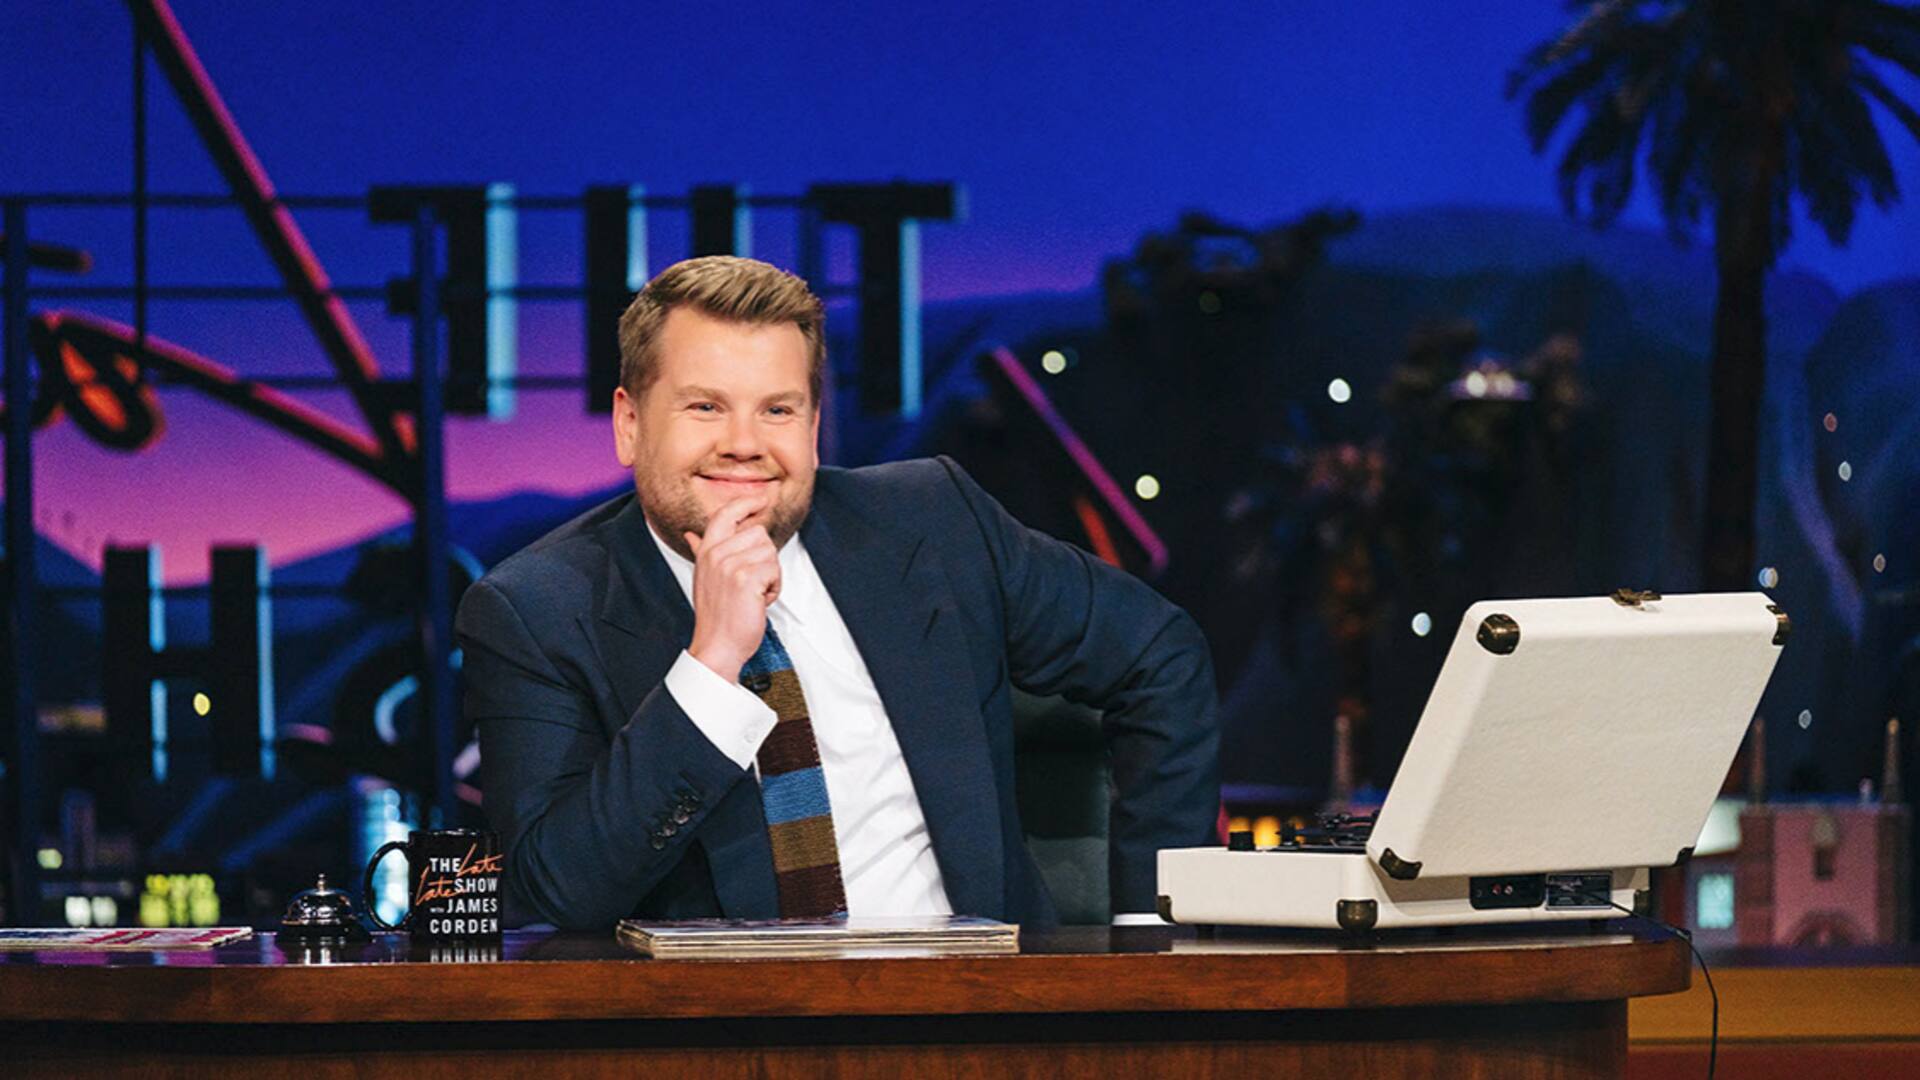 Kardashians to 'Carpool Karaokes': How will James Corden's talk-show end 